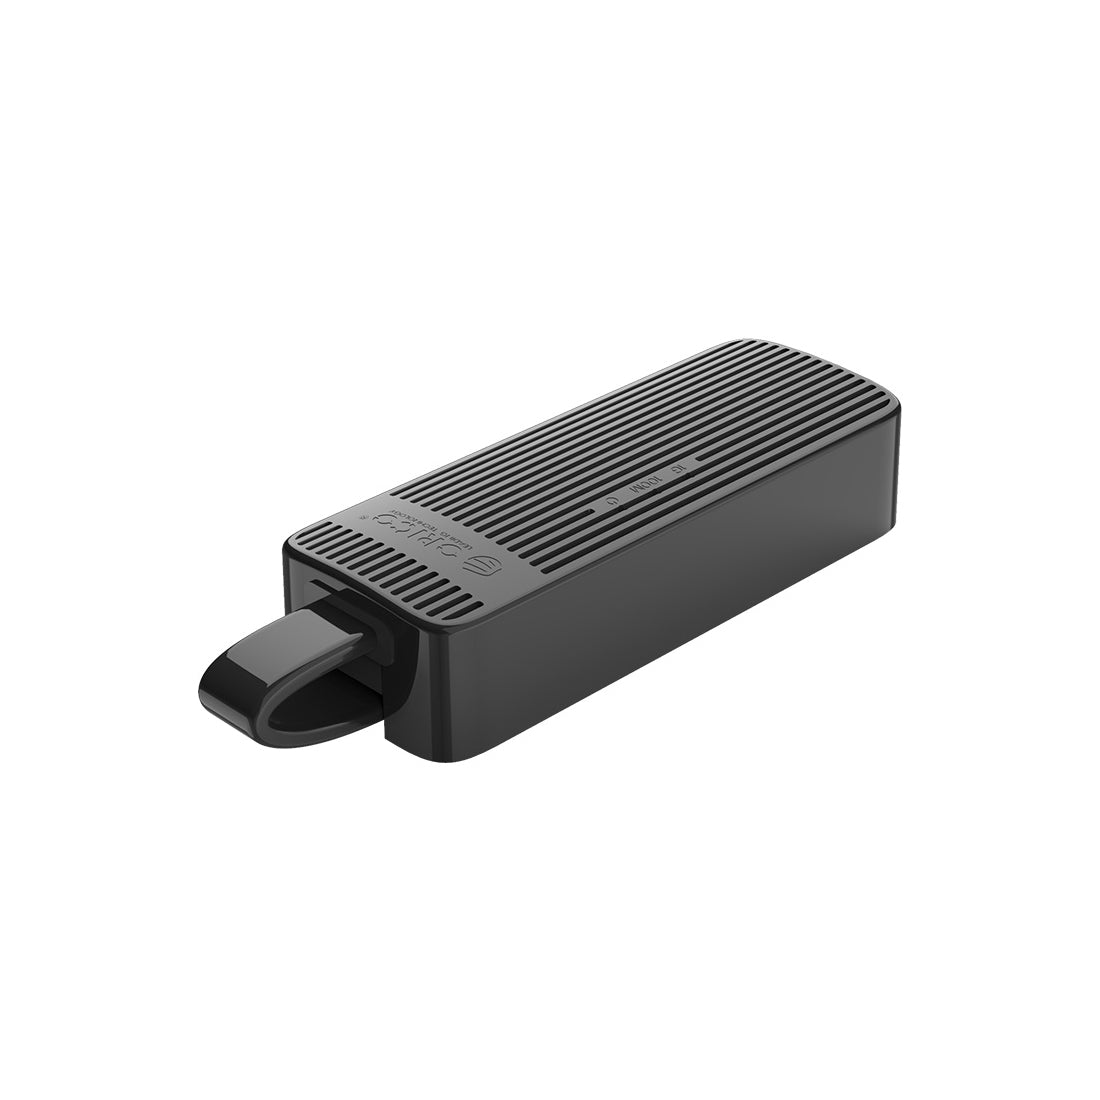 Orico UTK-U3 USB से ईथरनेट अडैप्टर USB 3.0 टाइप-A के साथ - काला